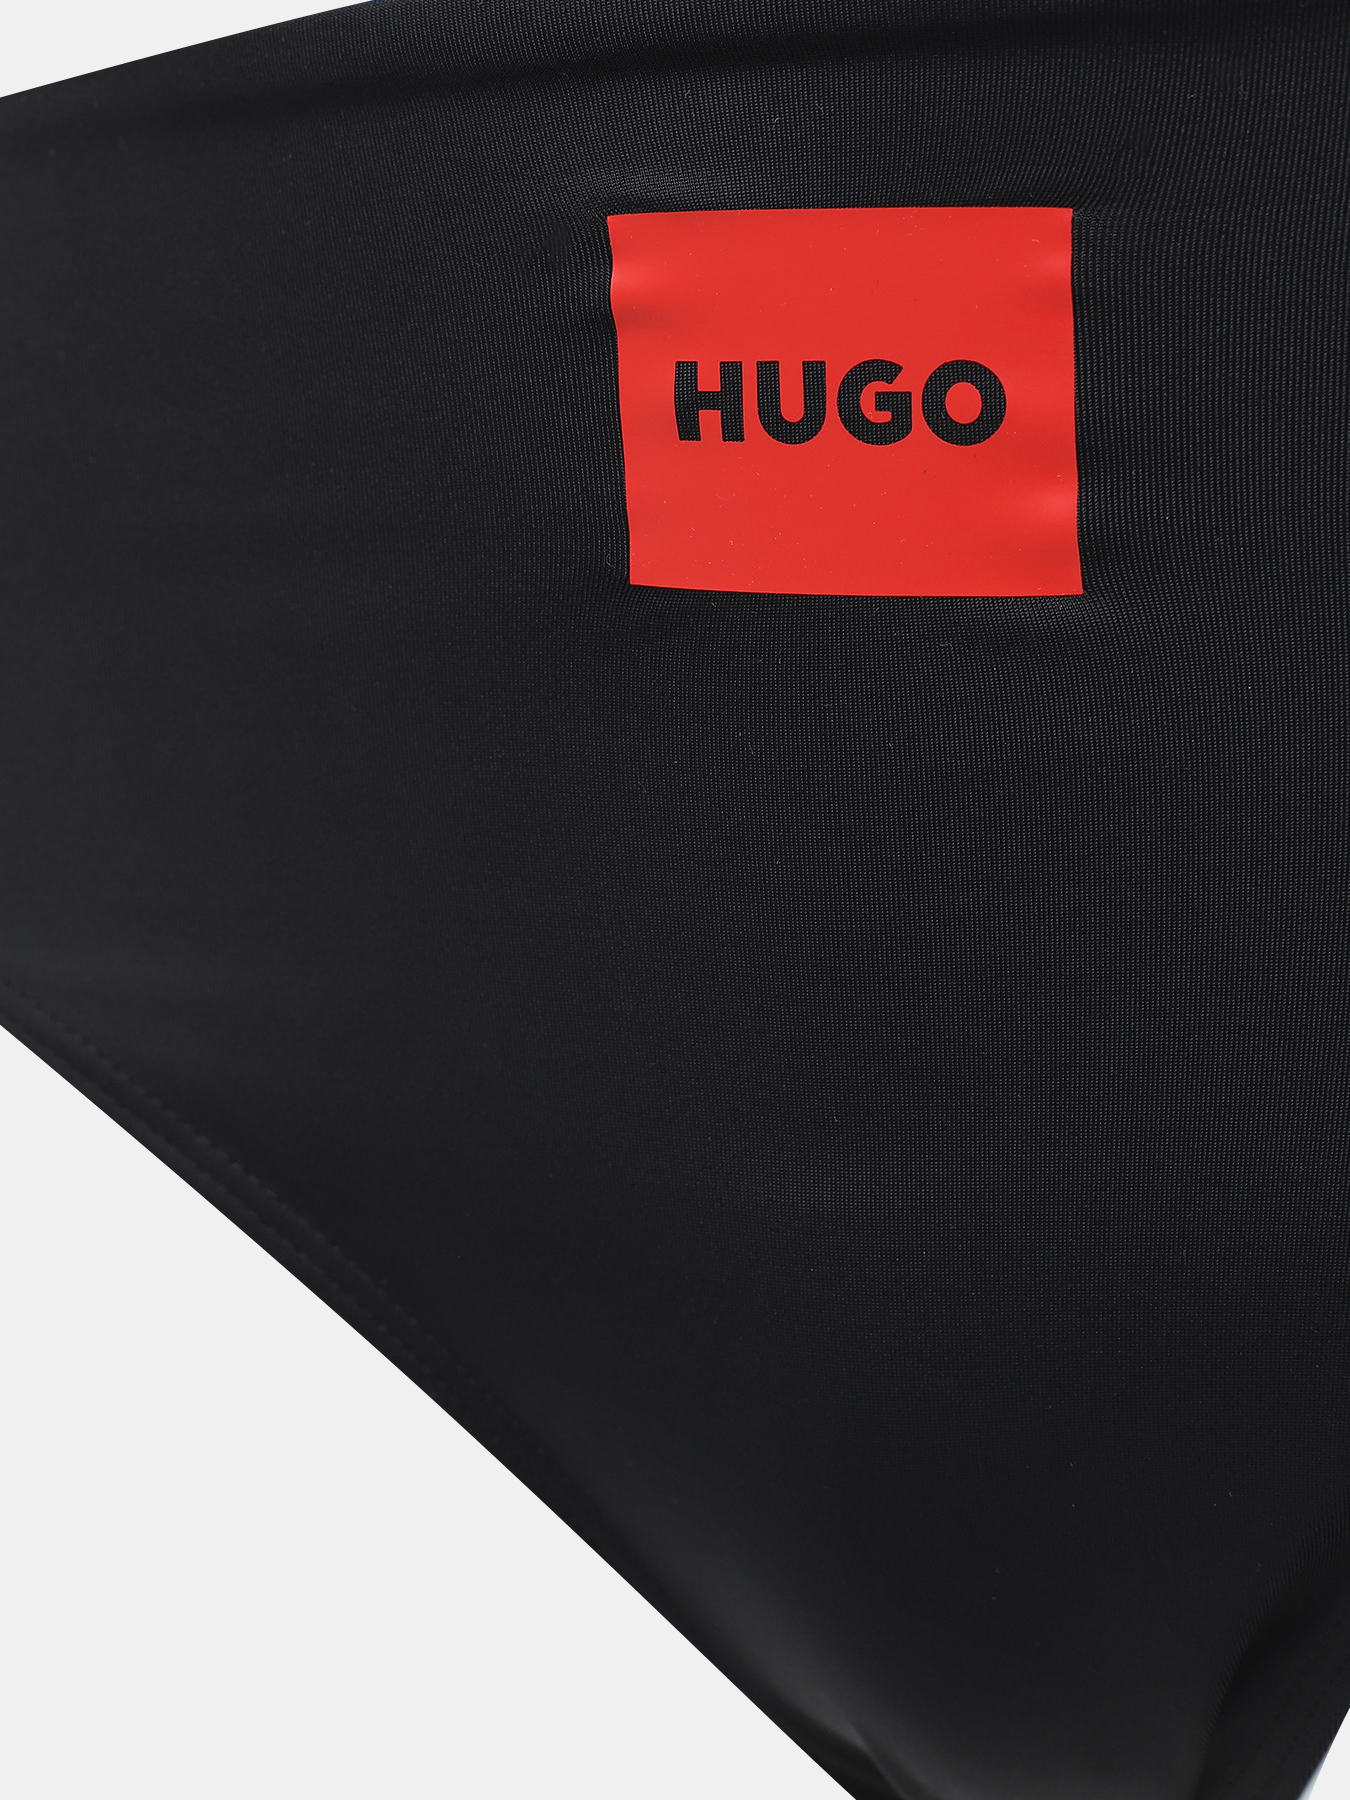 Плавки купальные Red Label HUGO 436062-043, цвет черный, размер 44-46 - фото 3